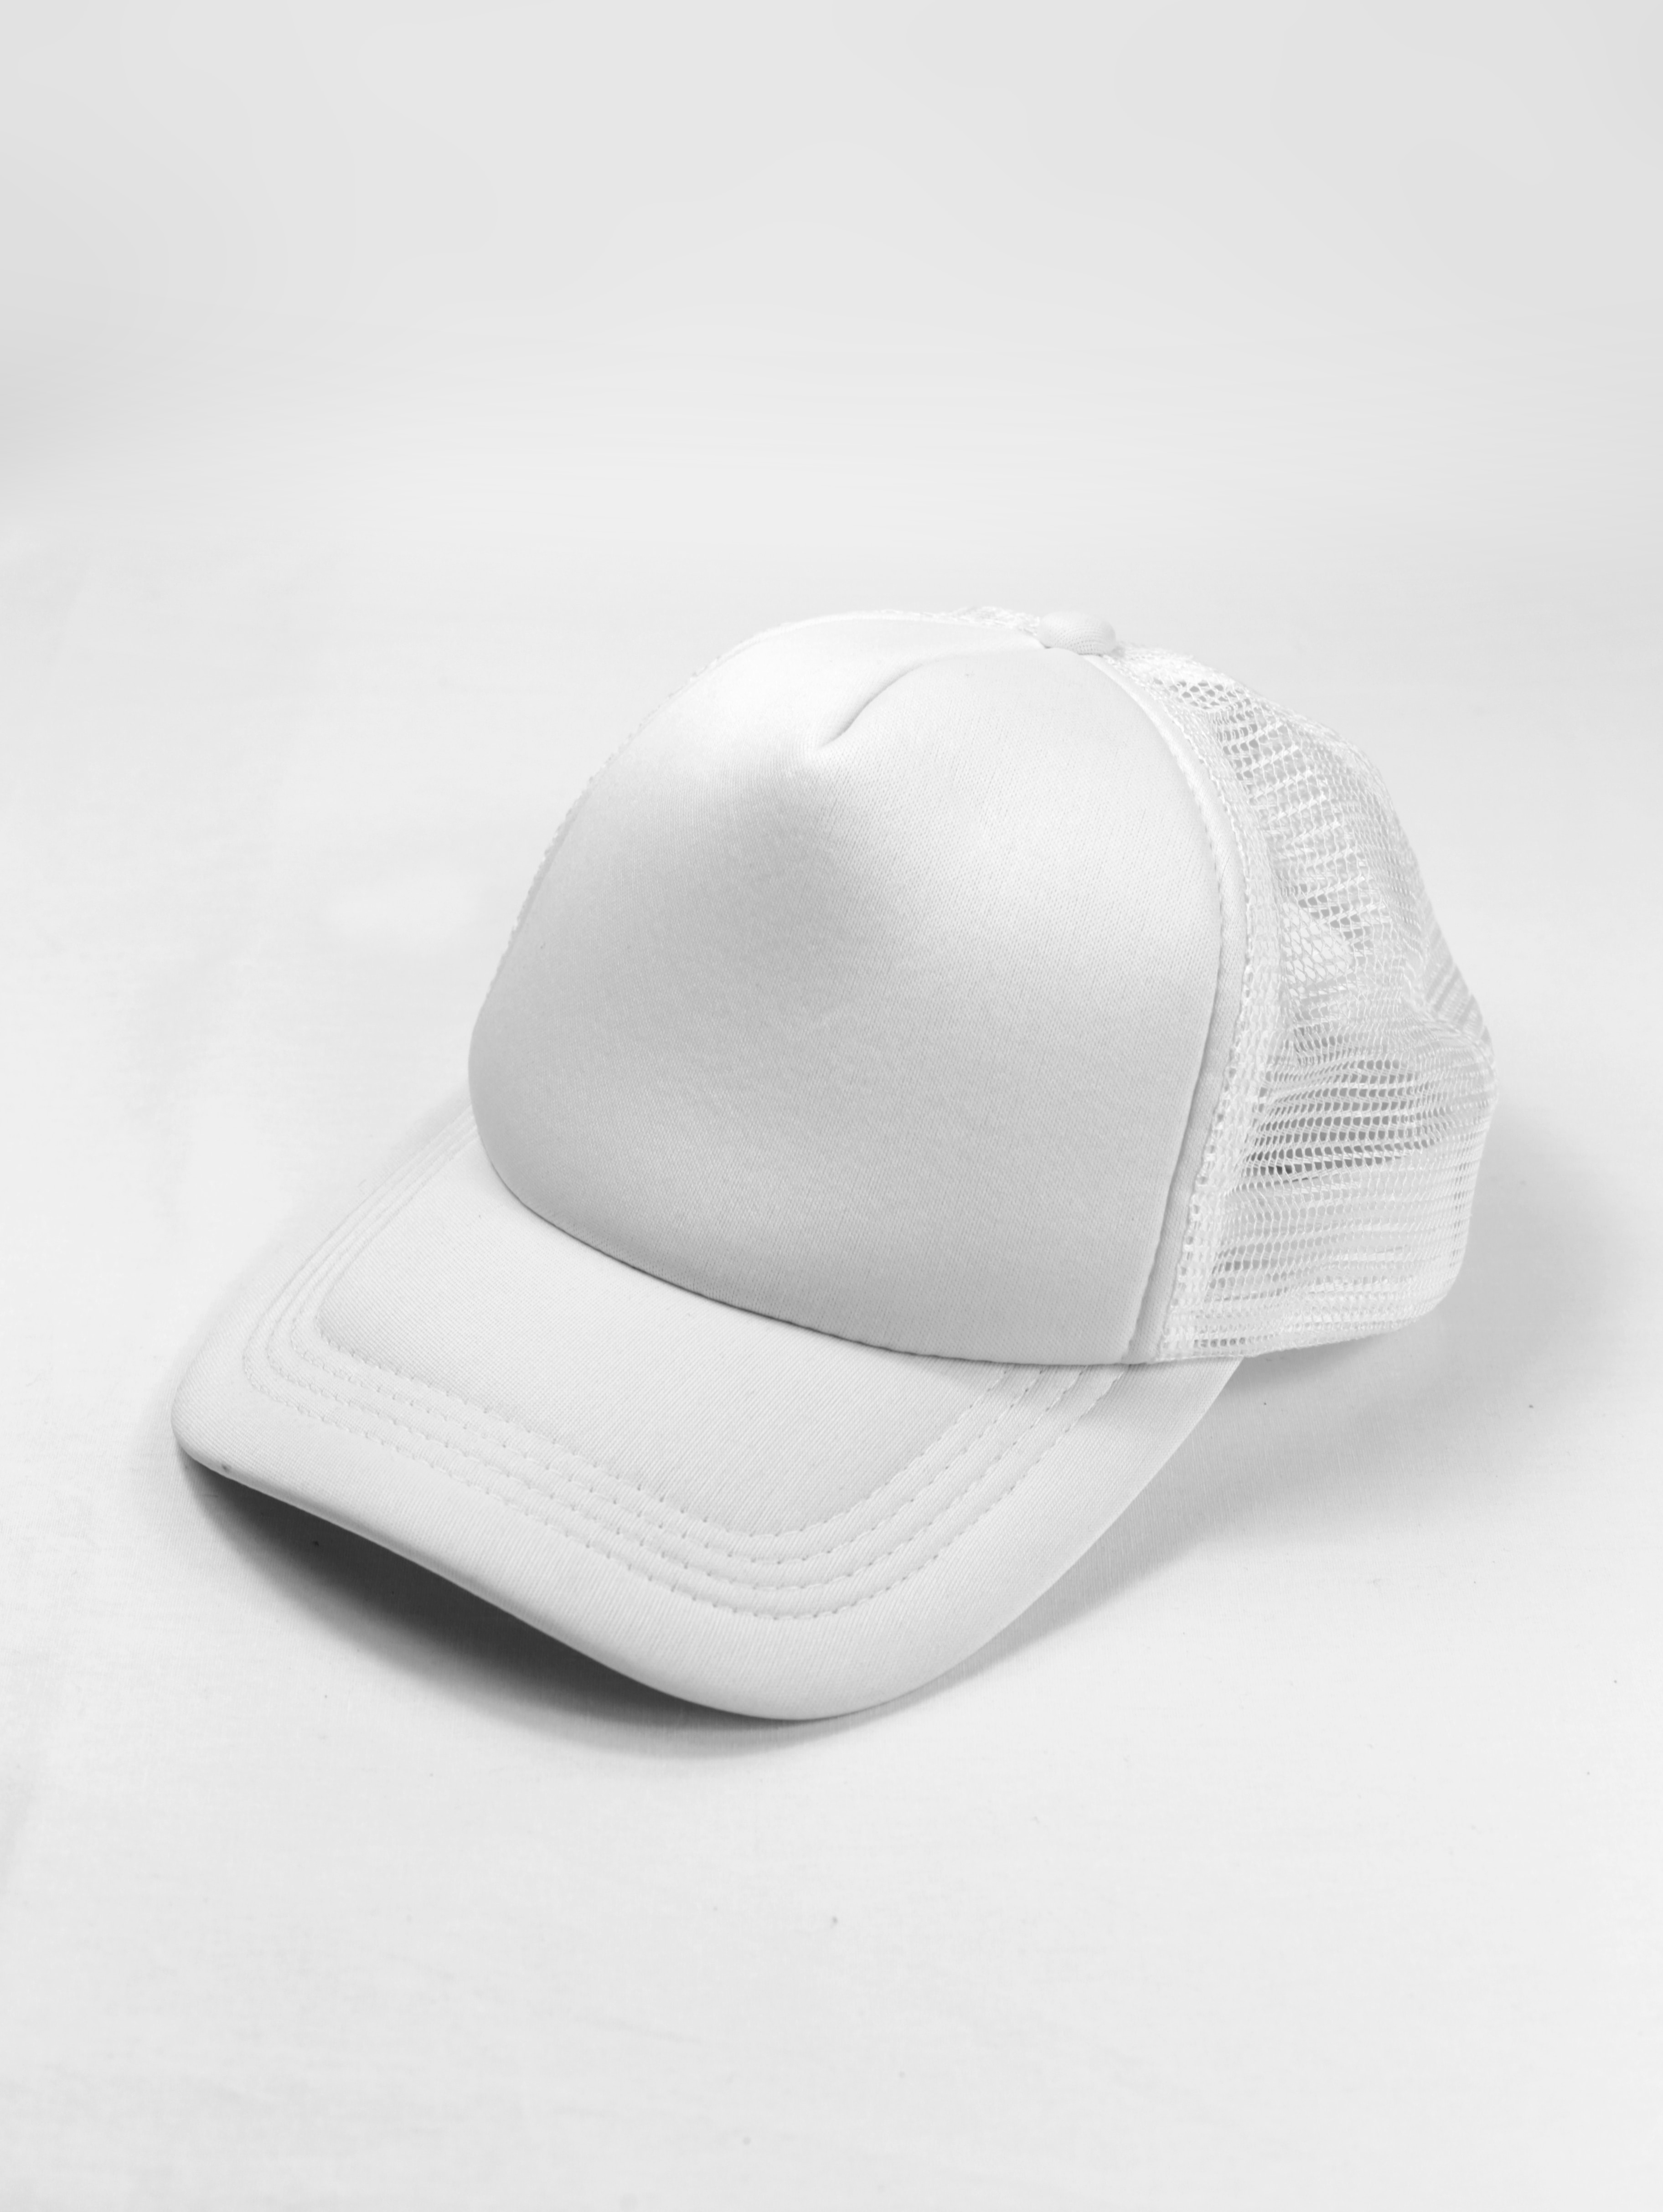 美國大聯盟級的客製化棒球帽，款式、品質都是最頂級